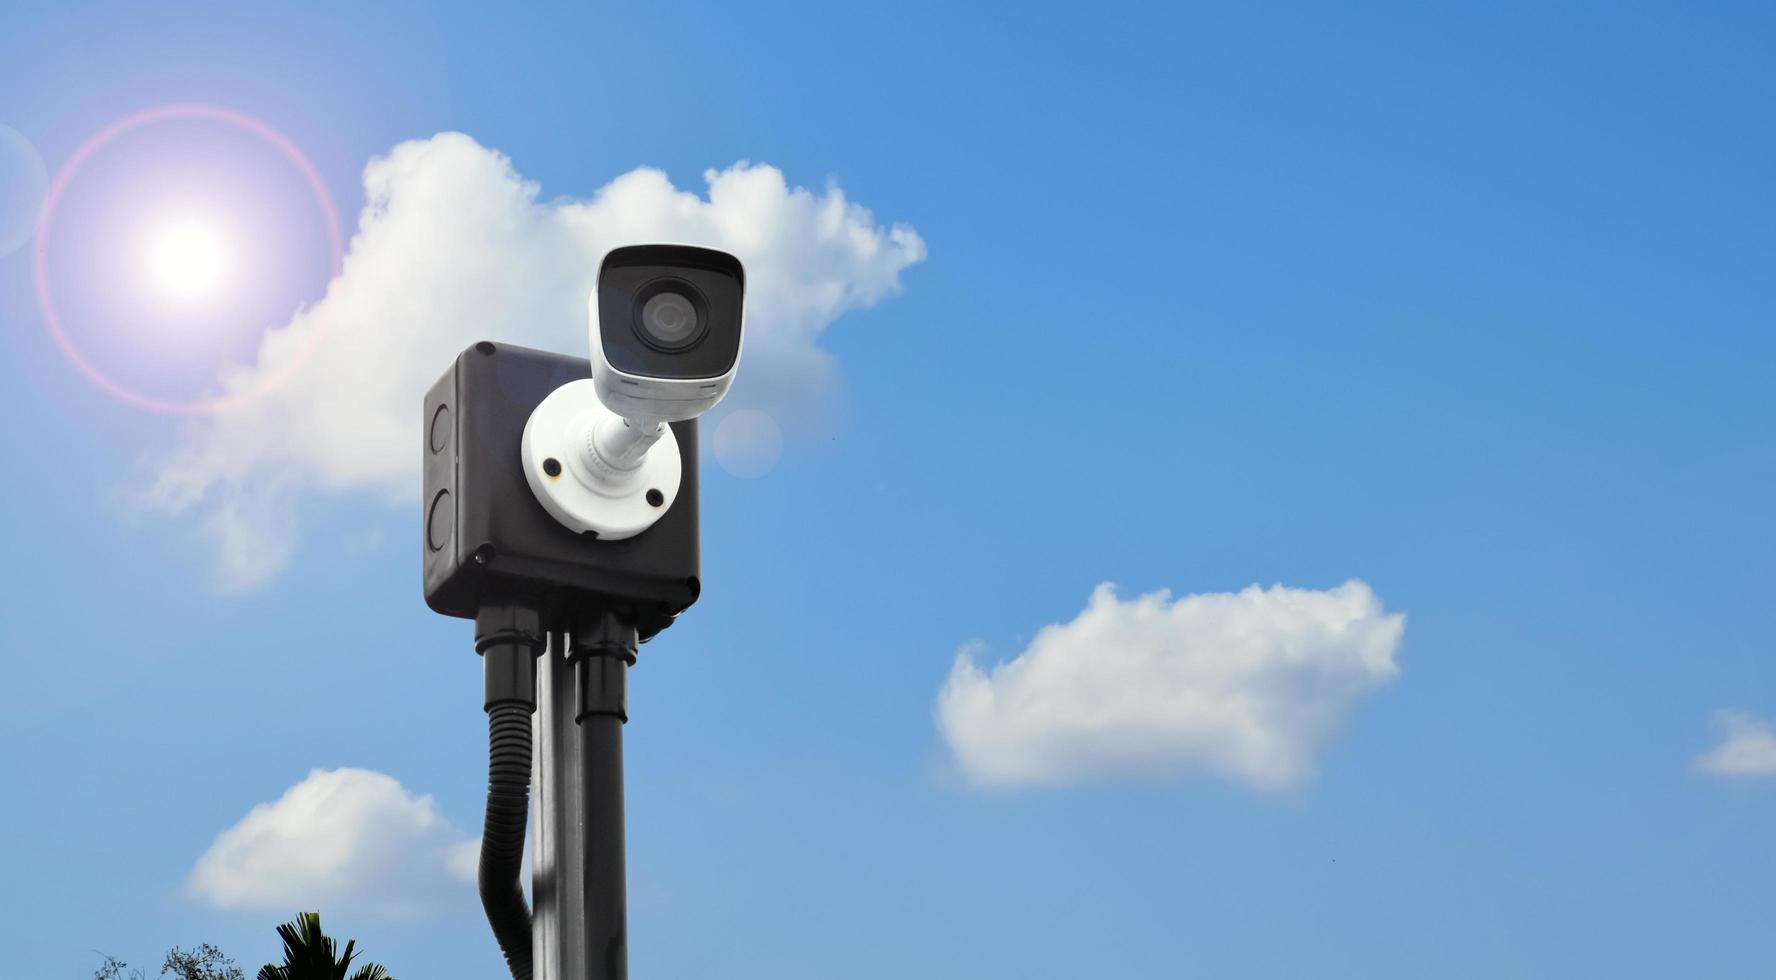 mini caméra de vidéosurveillance ip installée sur un poteau en bois pour assurer la sécurité au lieu de l'humain en surveillant via un téléphone portable, une mise au point douce et sélective. photo